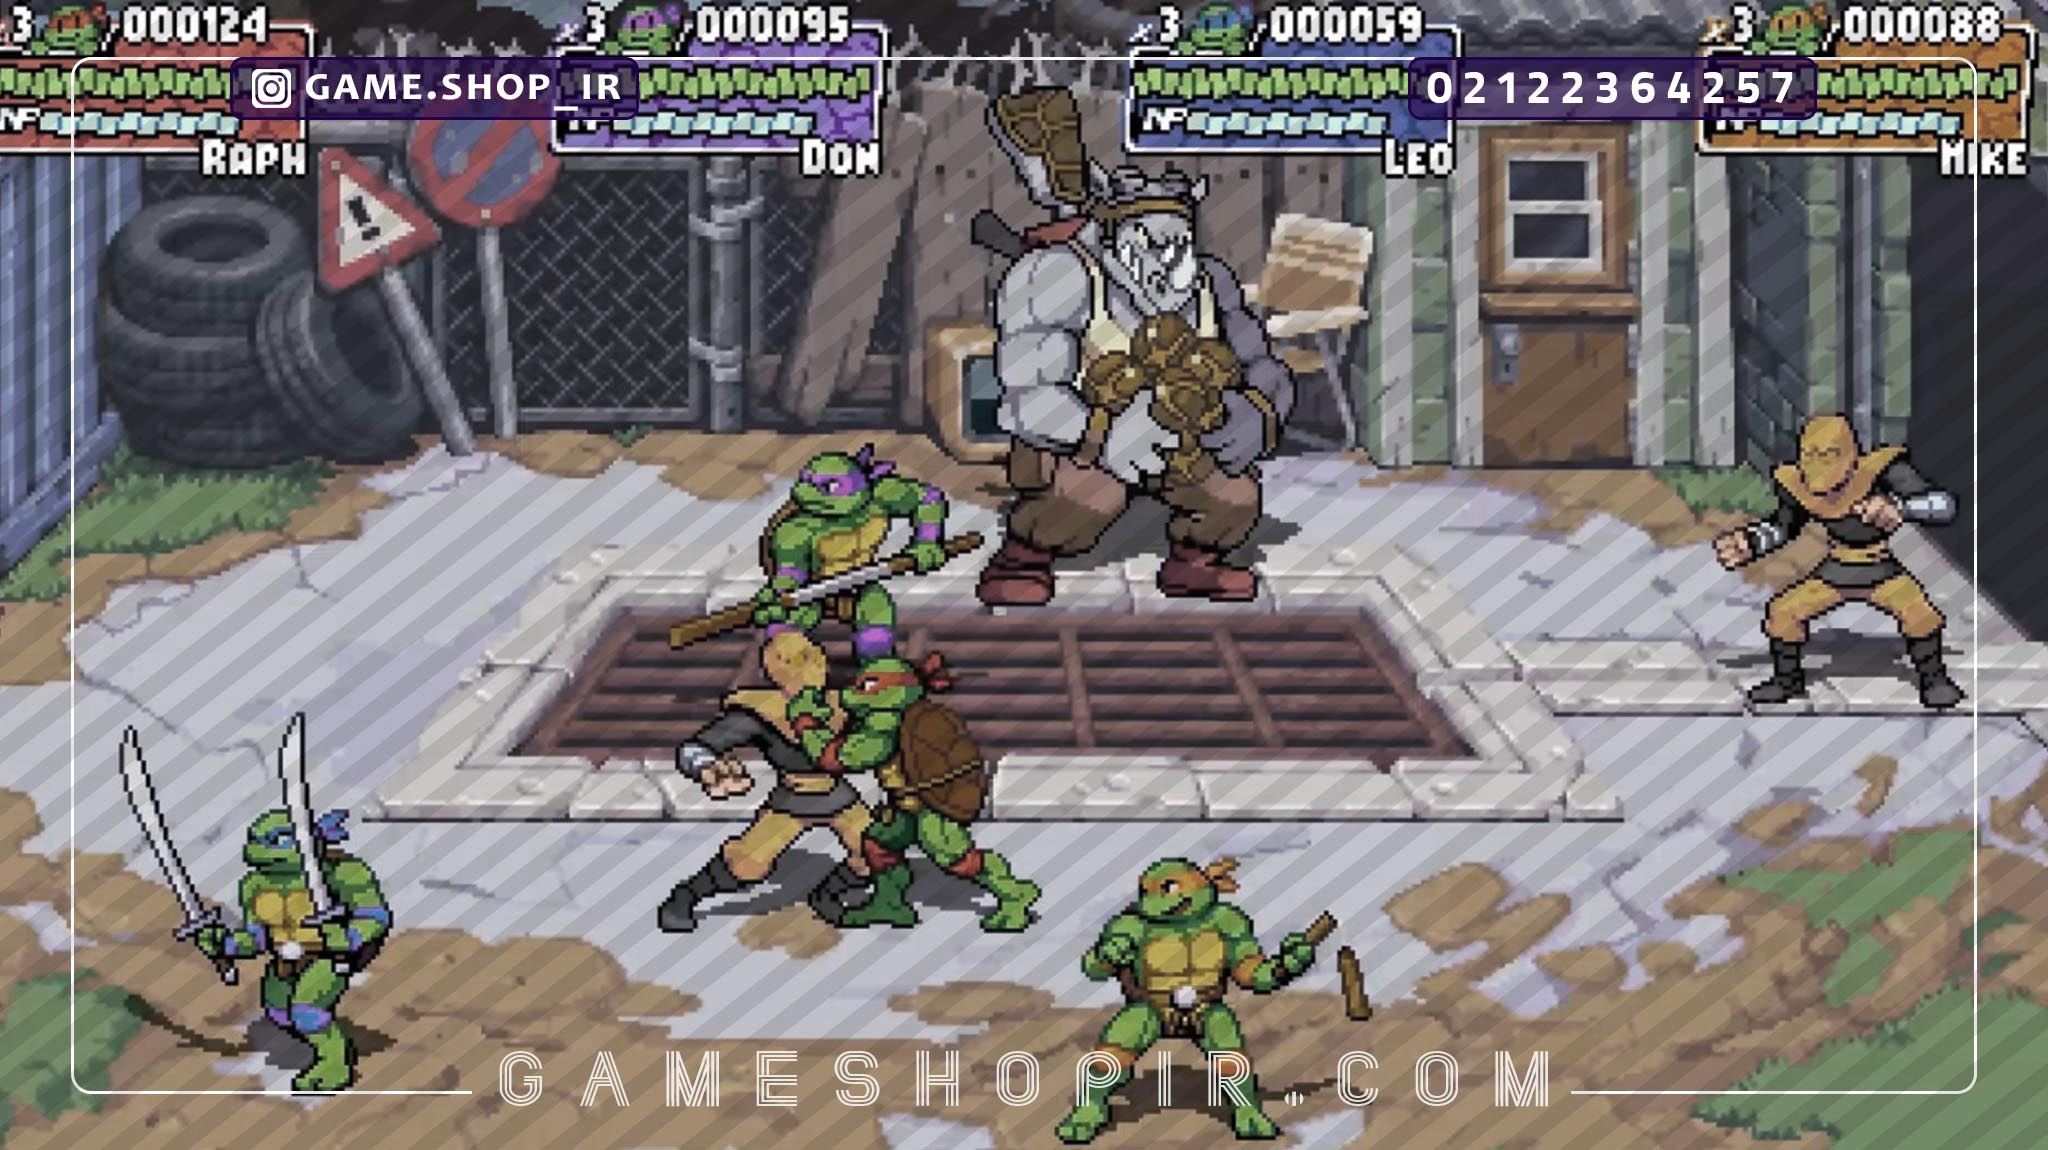 بازی Teenage Mutant Ninja Turtles: Shredder’s Revenge